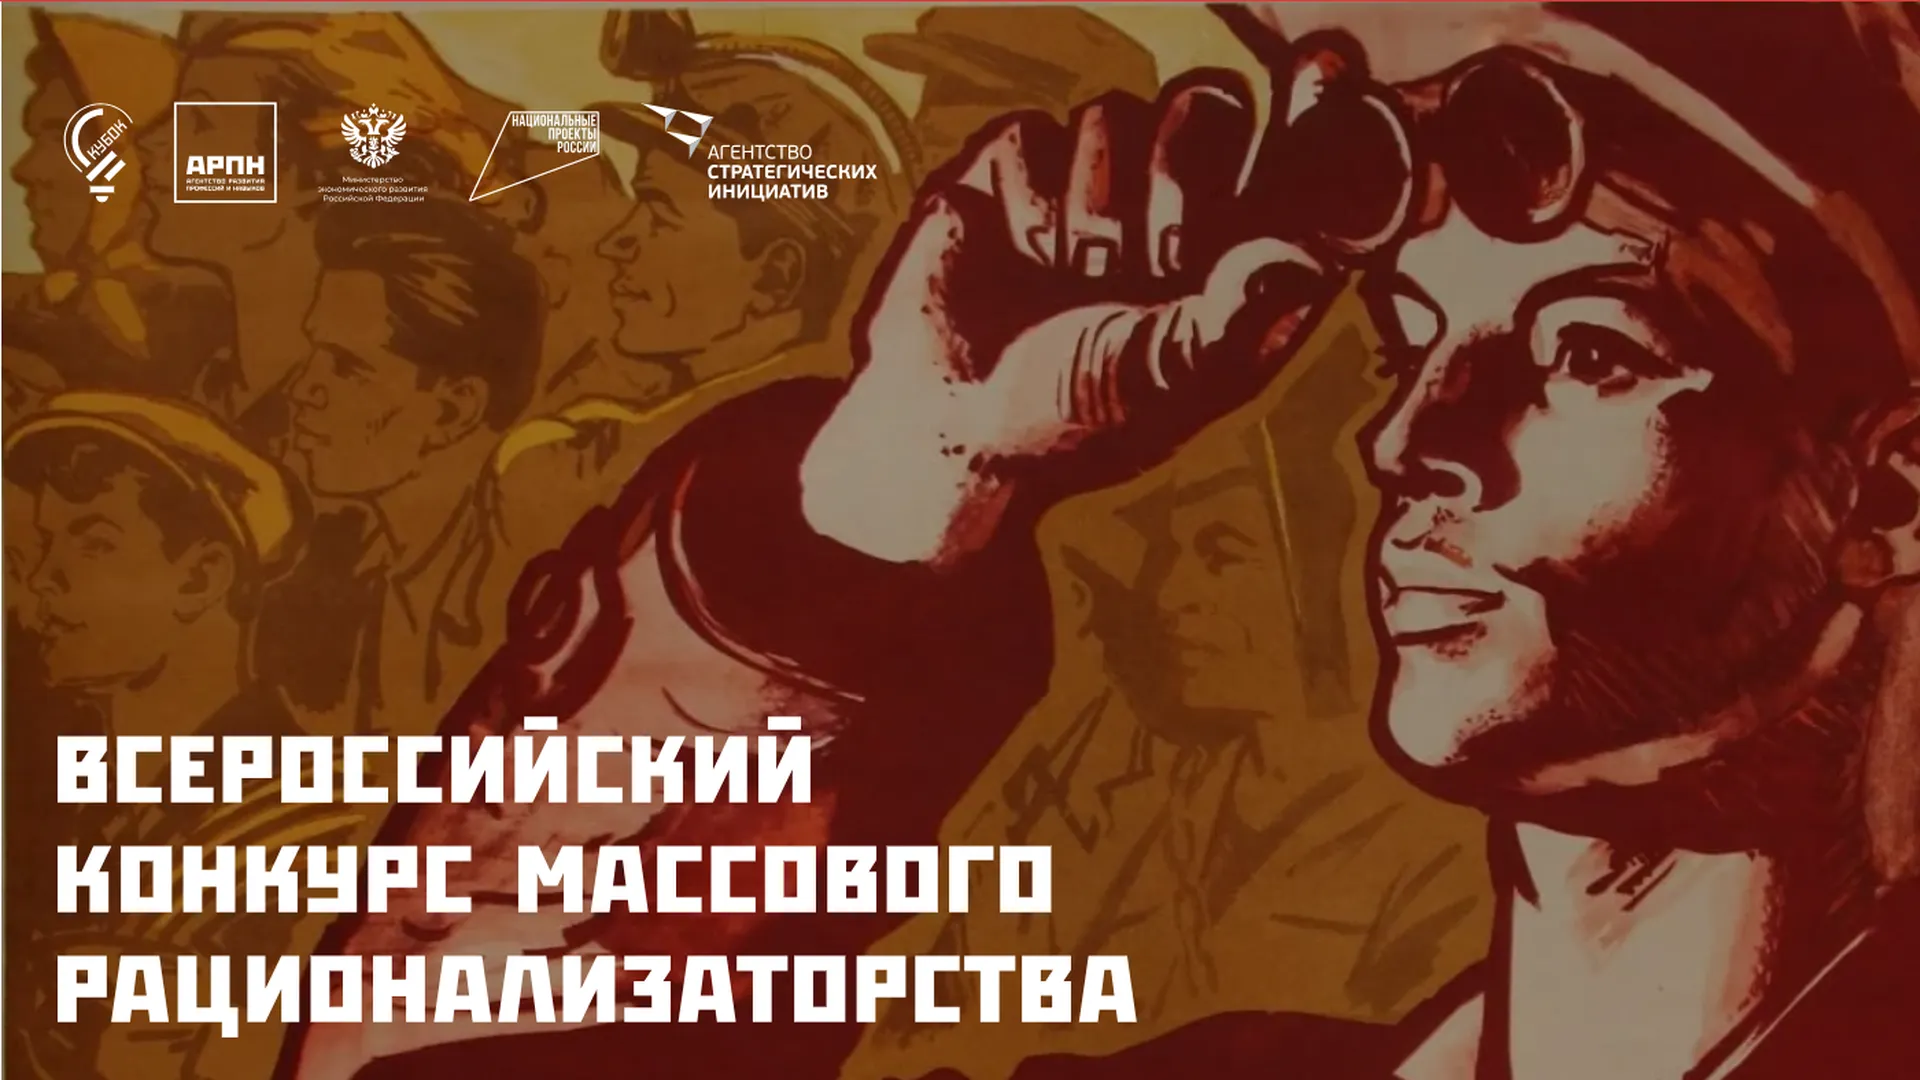 Стартовал прием заявок на Всероссийский конкурс массового рационализаторства